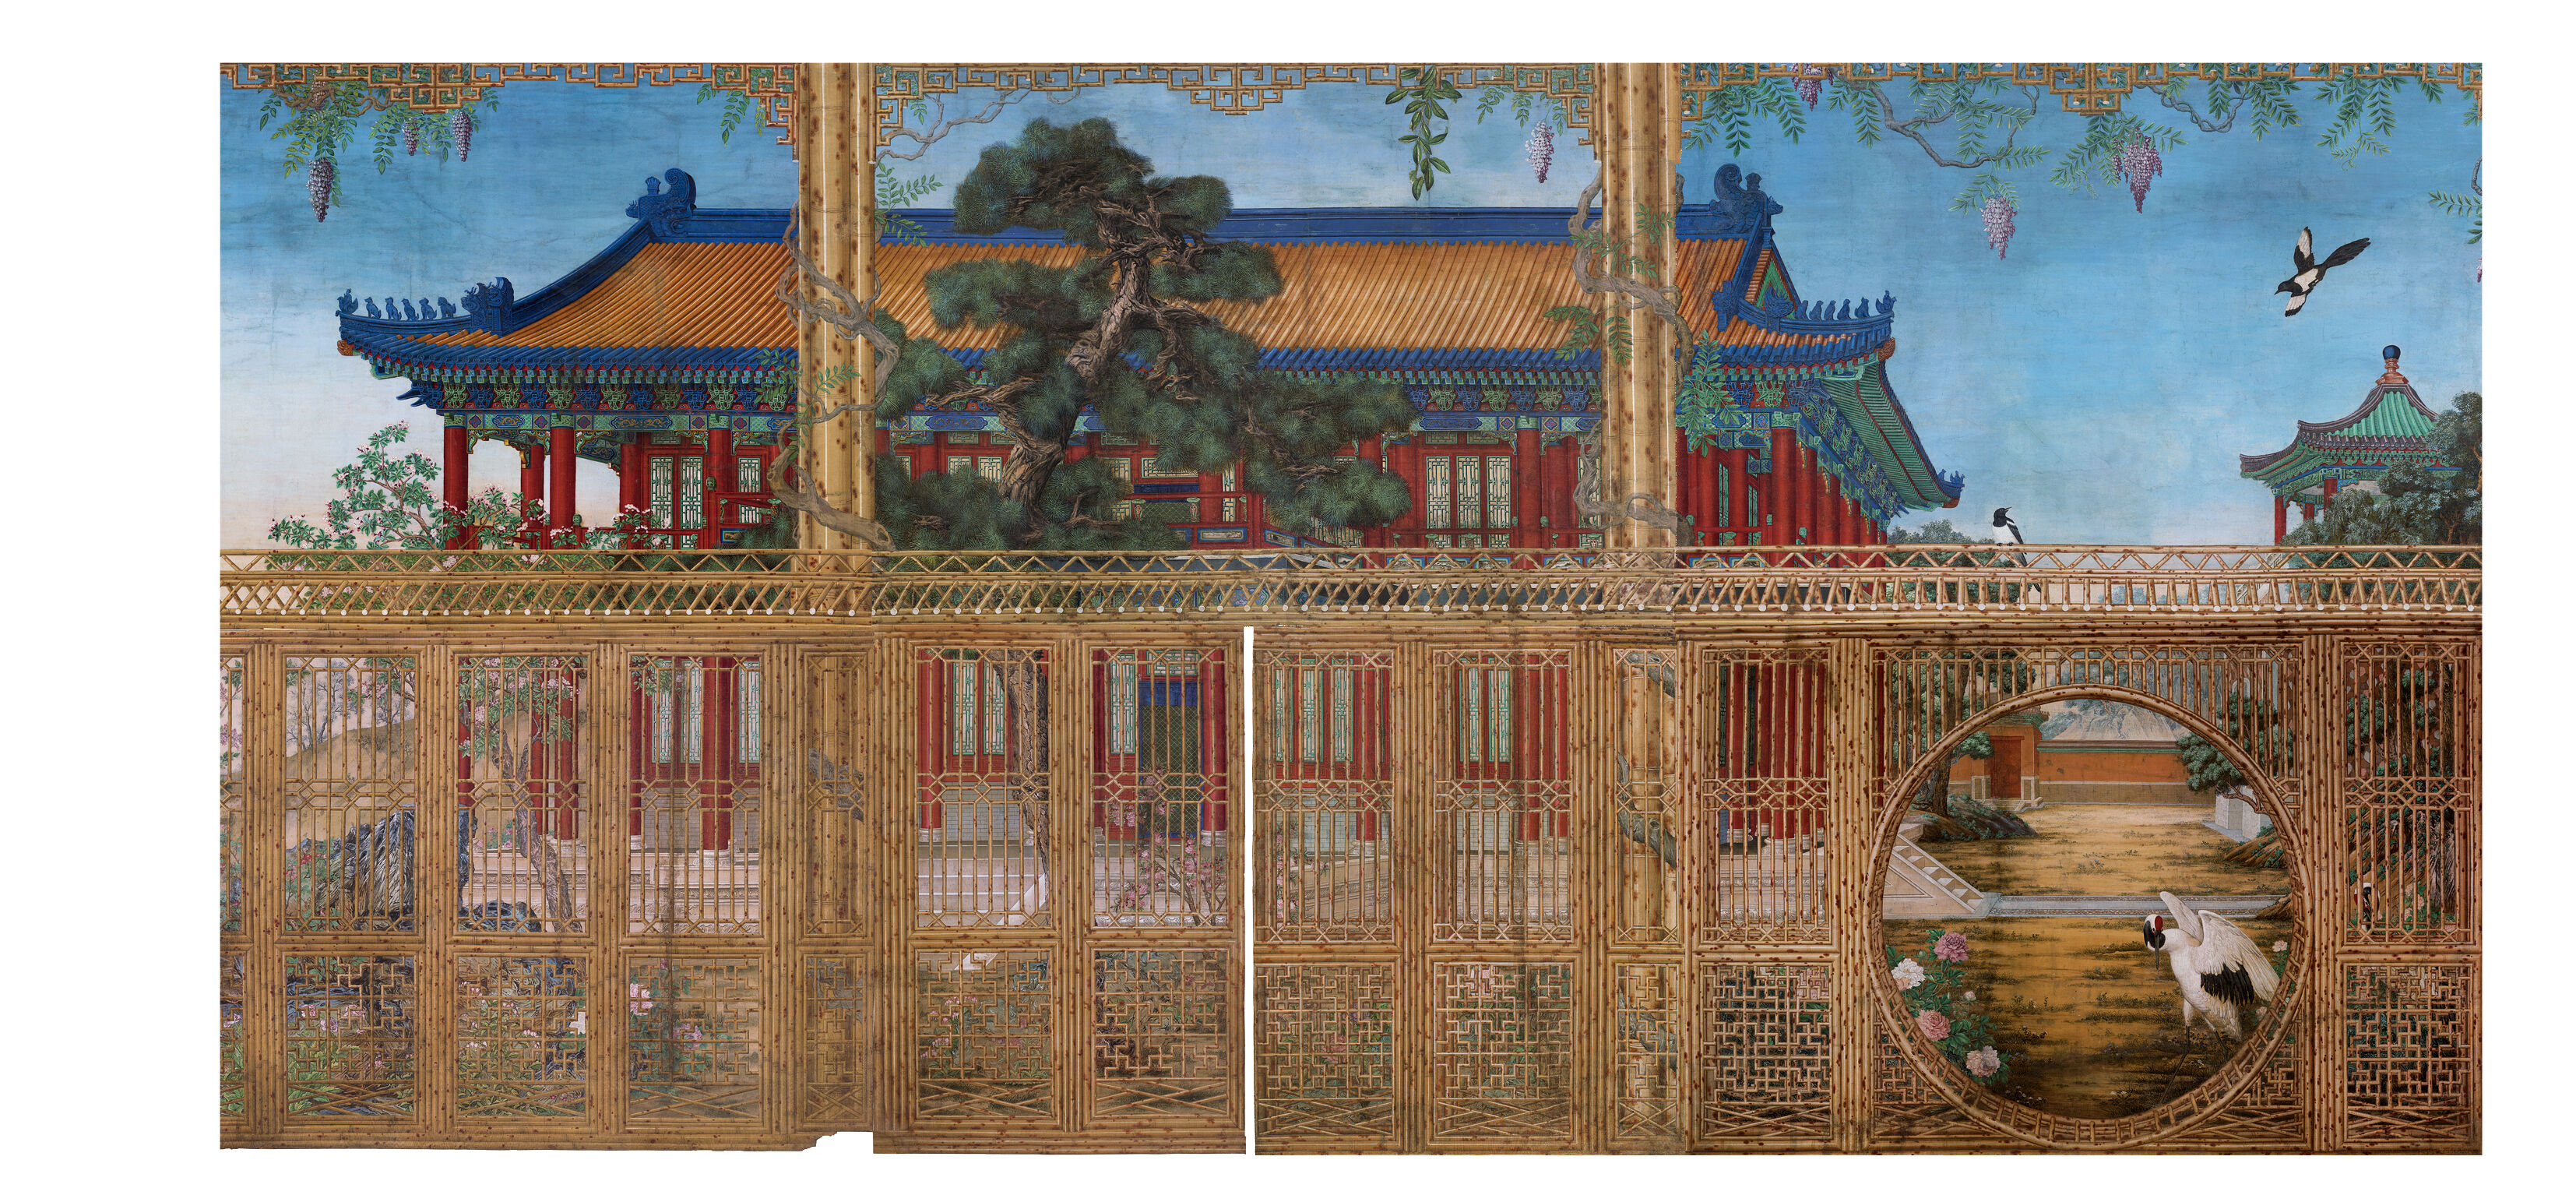 乾隆帝归政养老的秘密斋宫，装饰了迷之好看的通景壁画